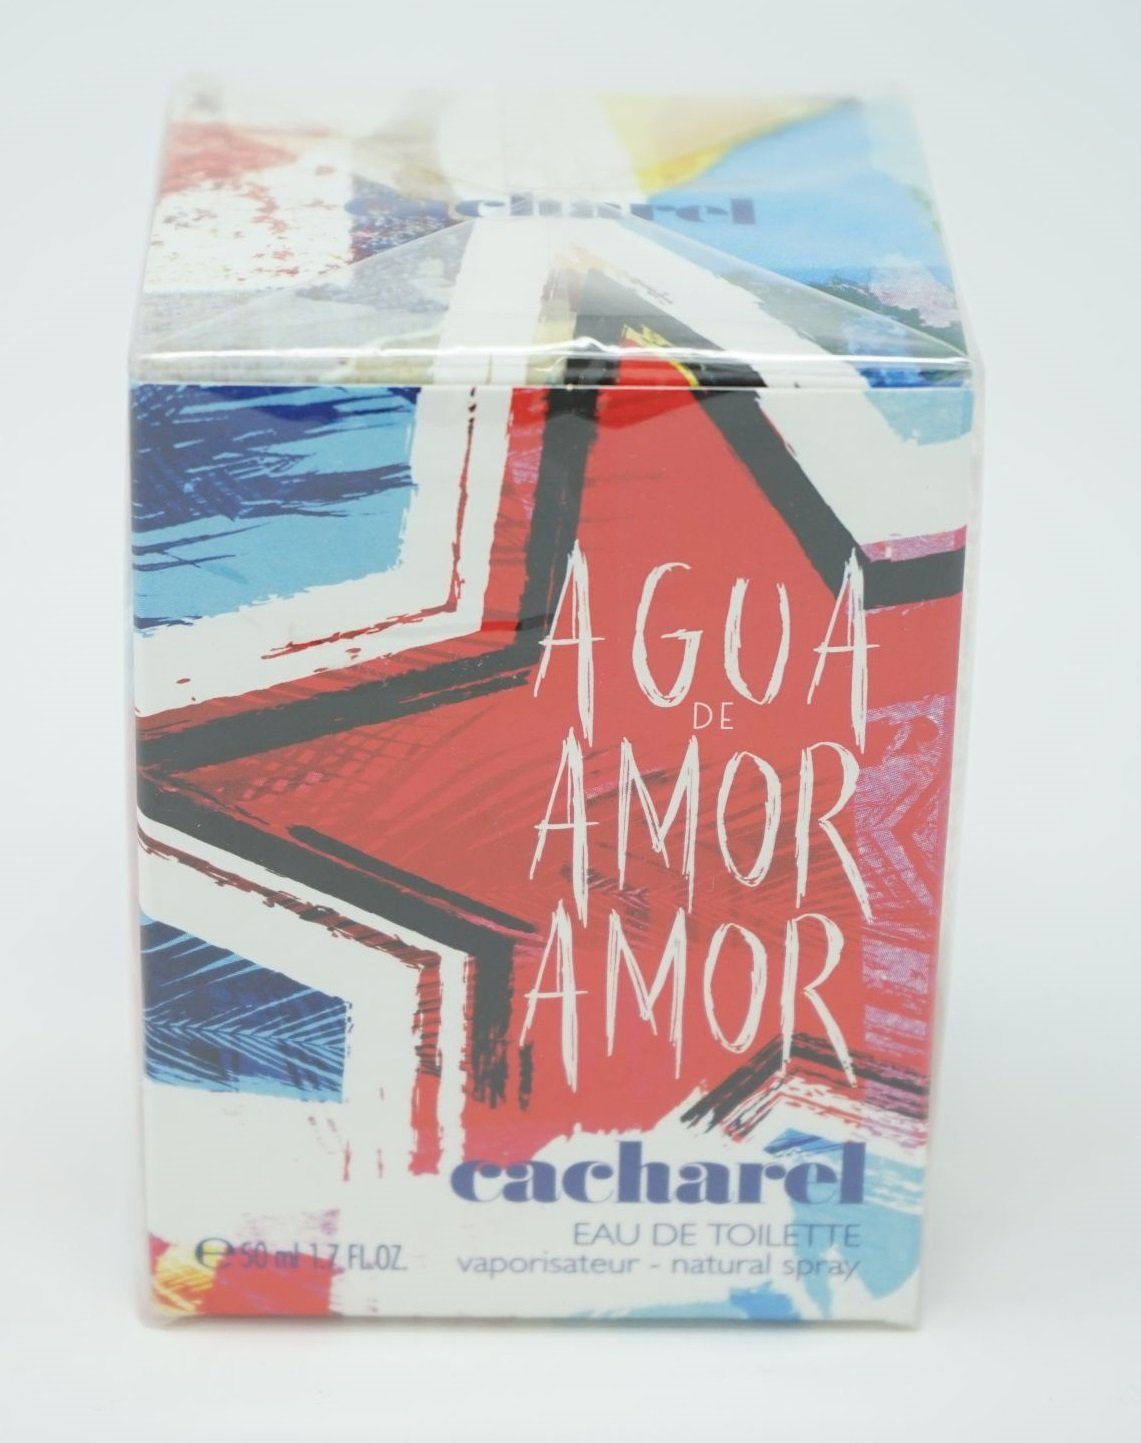 Verkaufserfolg Nr. 1 CACHAREL Eau de Toilette Eau de Amor Amor 50ml De Cacharel Toilette Agua